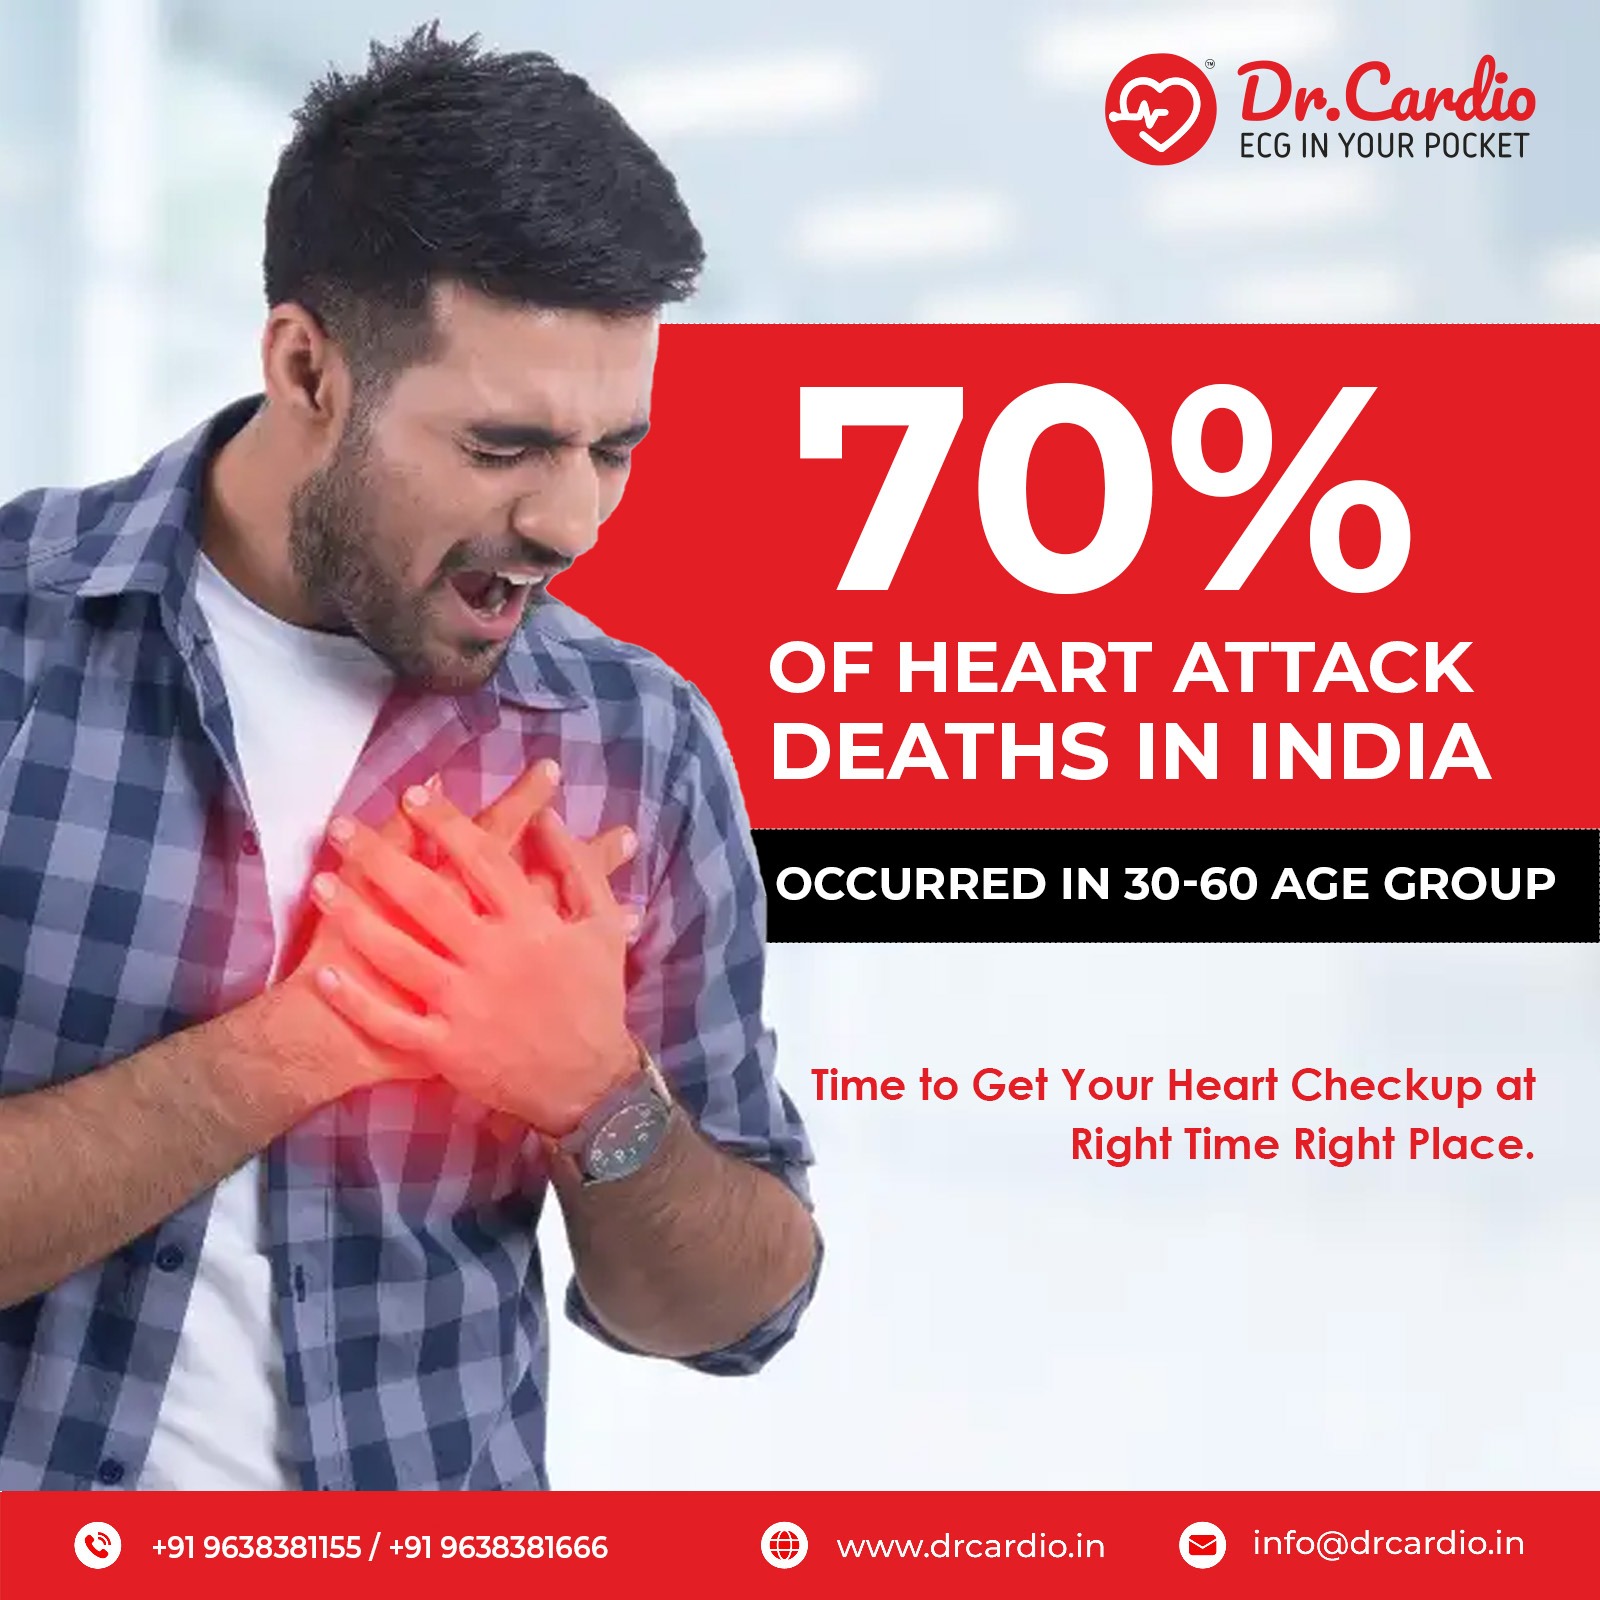 Dr. Cardio portable ECG machine in India